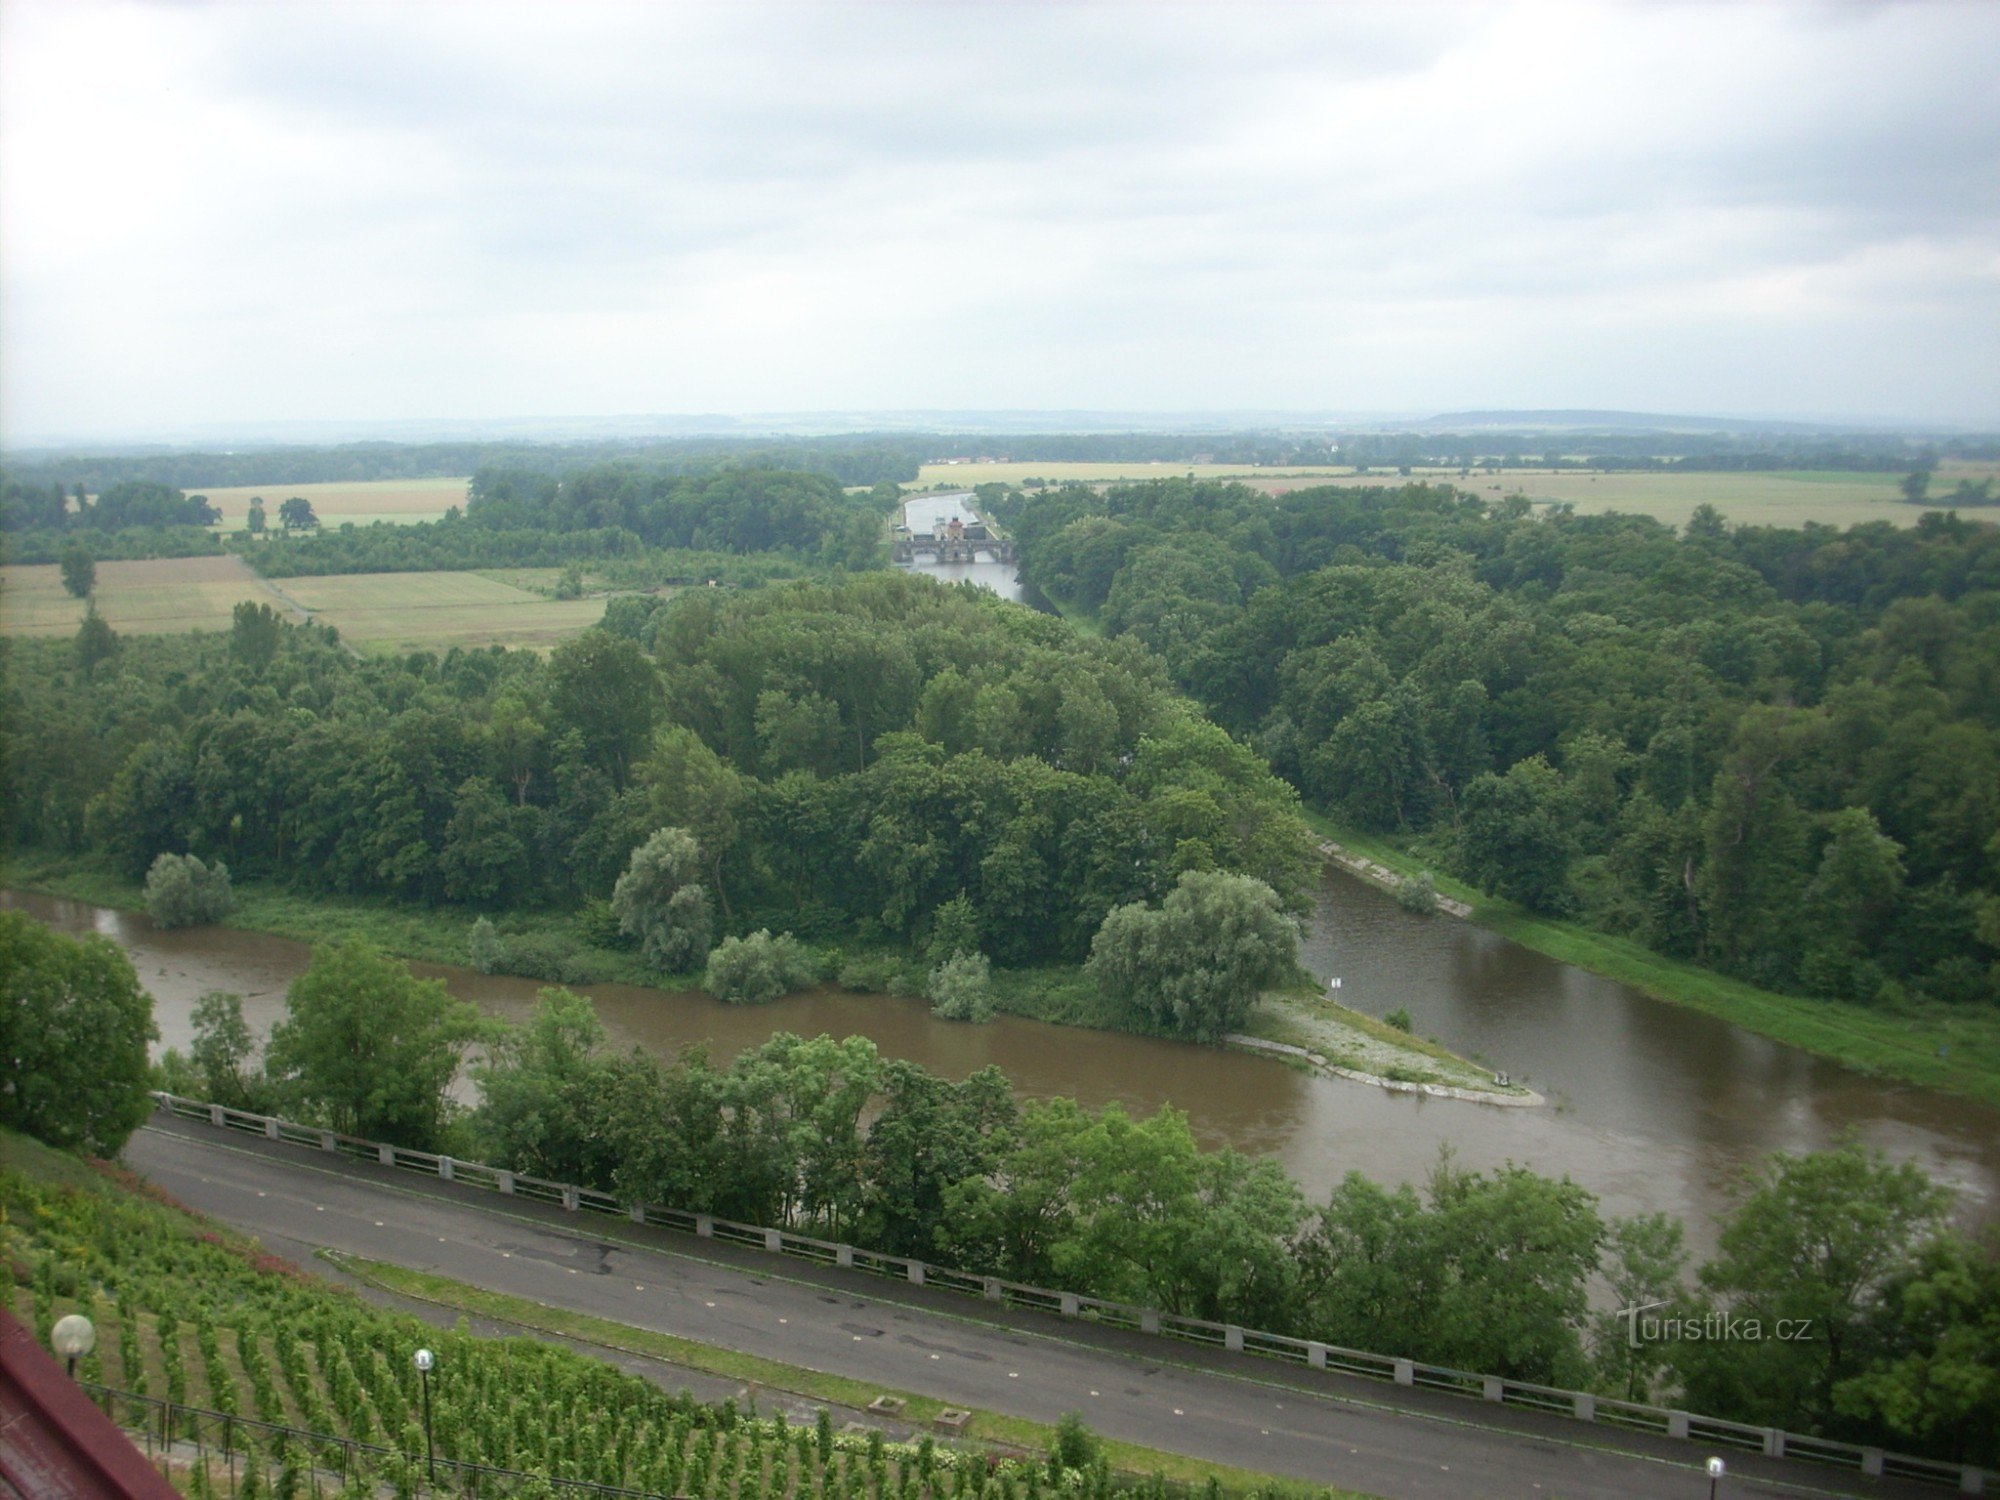 näkymä Elben ja Vltavan yhtymäkohtaan